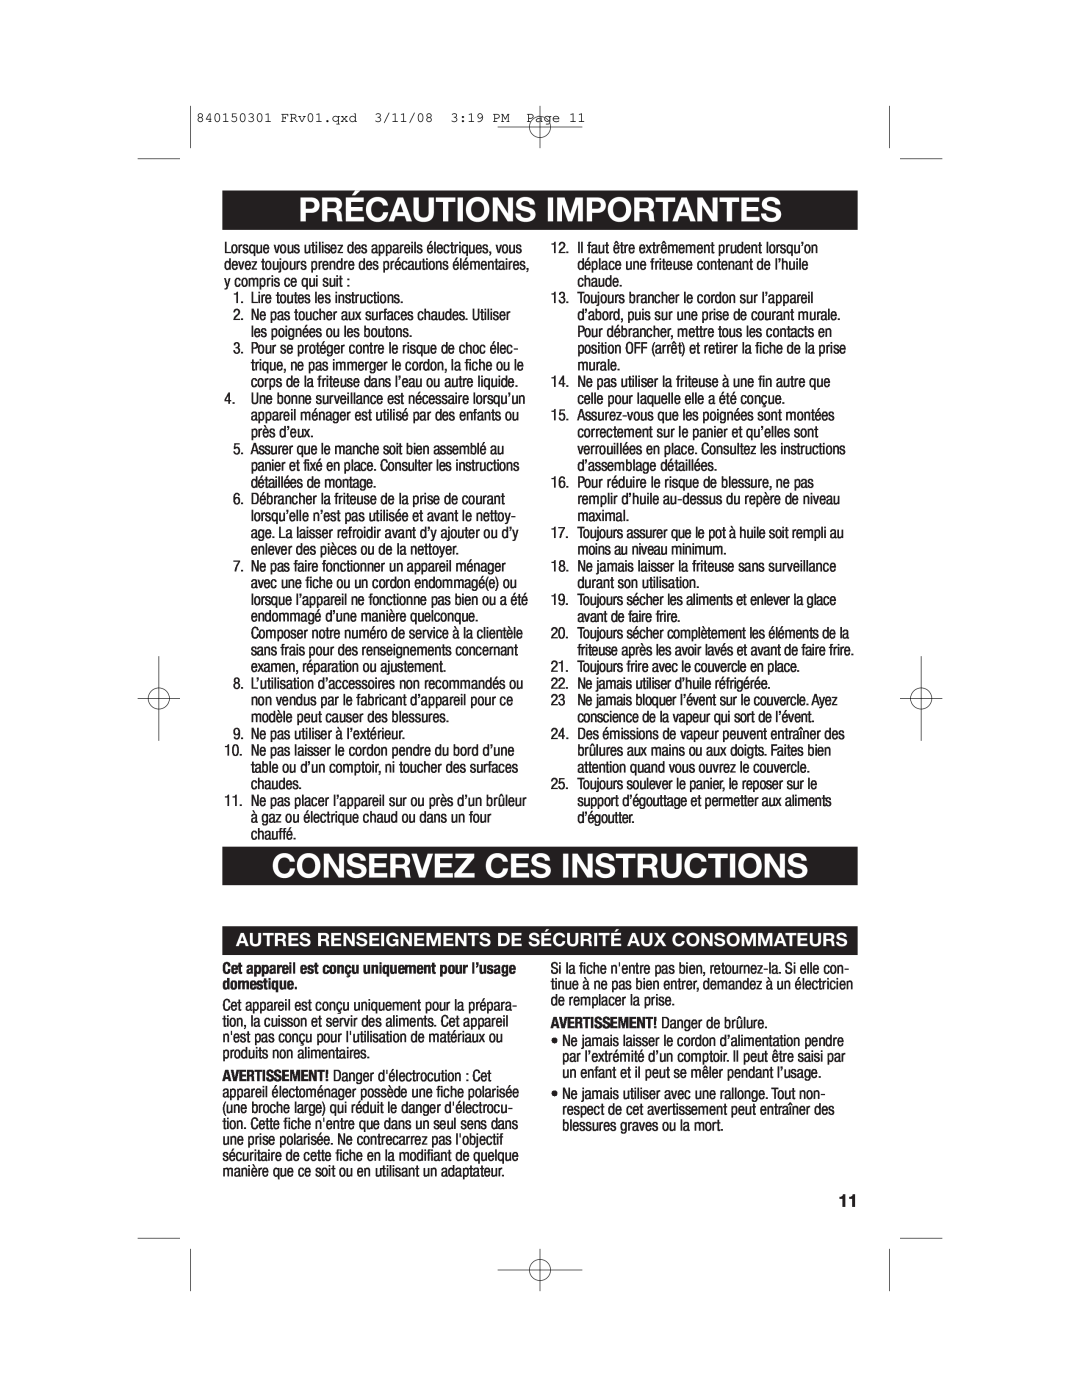 Hamilton Beach 35030C manual Précautions Importantes, Conservez Ces Instructions 